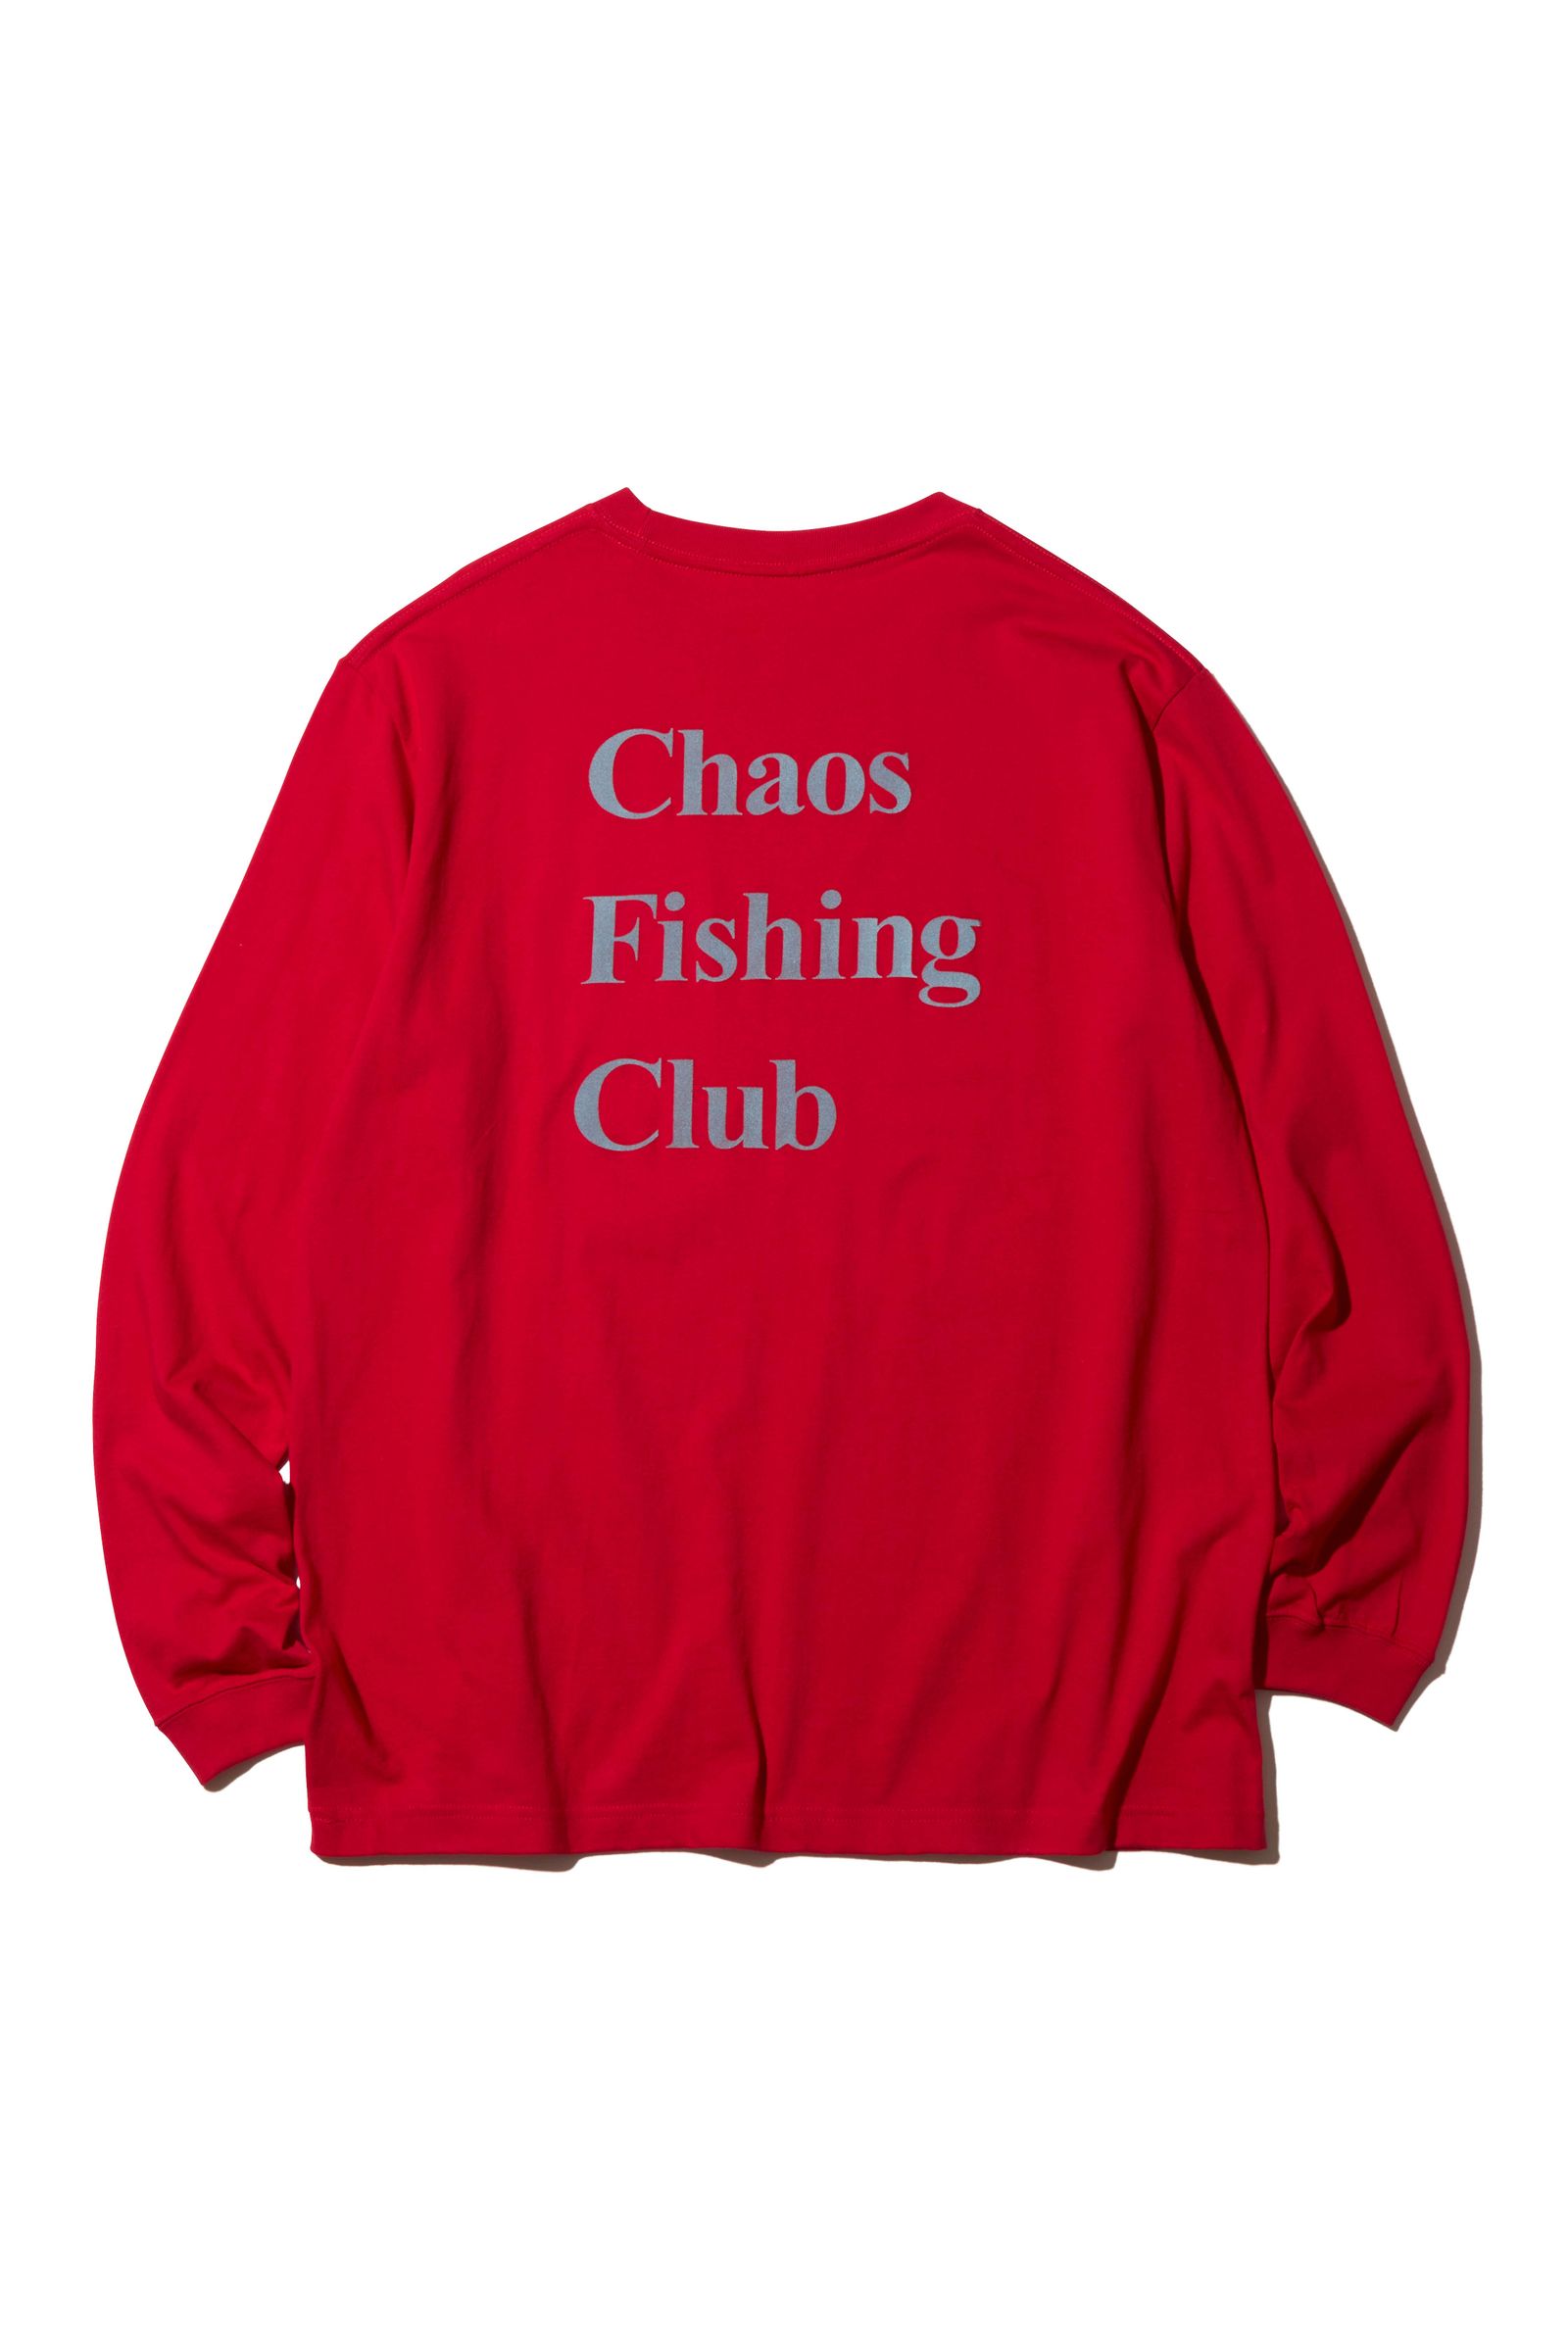 Chaos Fishing Club OG LOGO TEEwasted